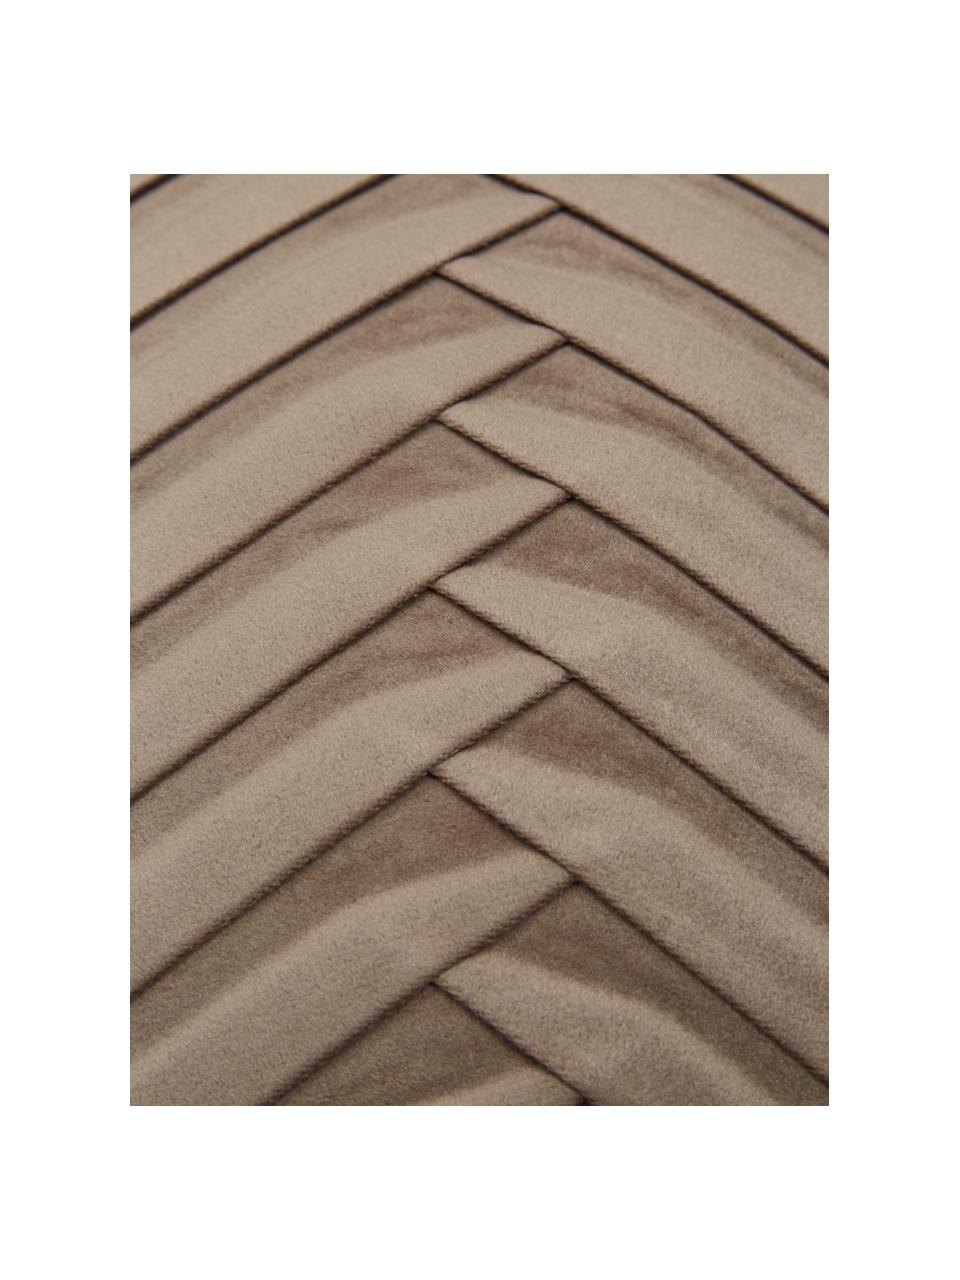 Samt-Kissenhülle Lucie in Taupe mit Struktur-Oberfläche, 100% Samt (Polyester), Beige, B 45 x L 45 cm